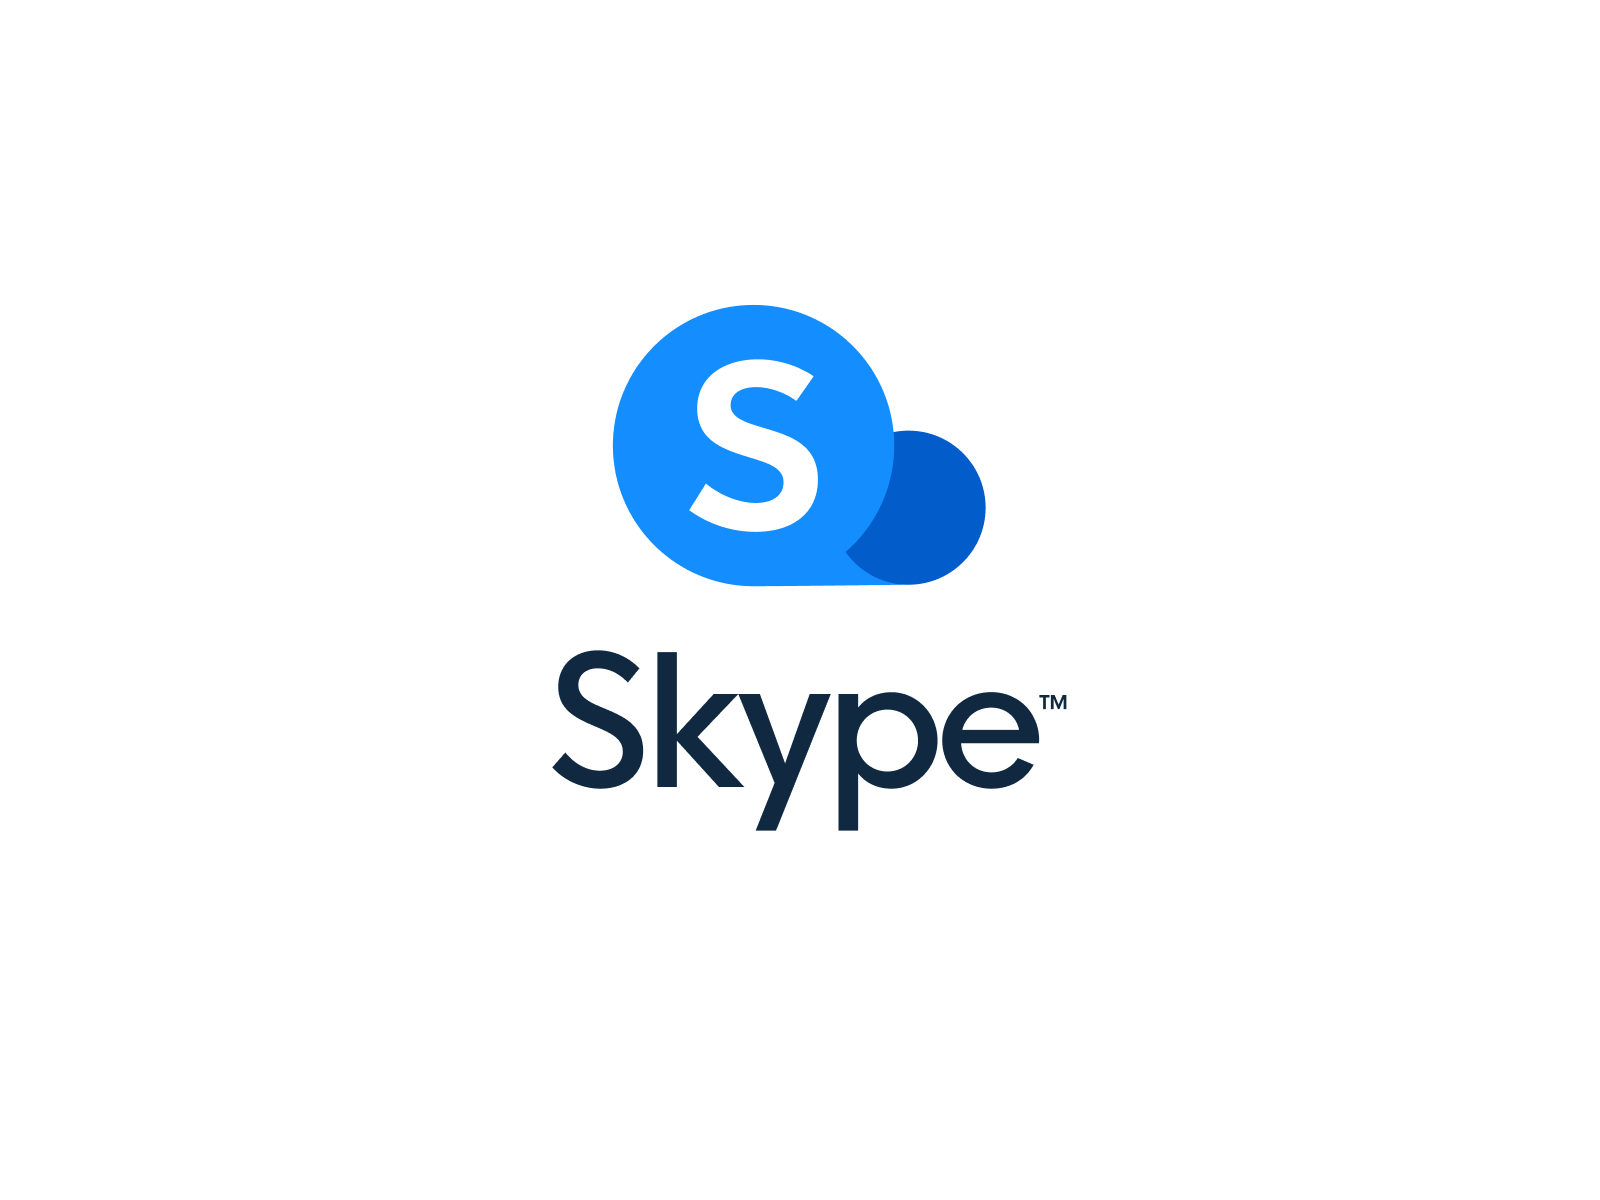 official logos skype to go